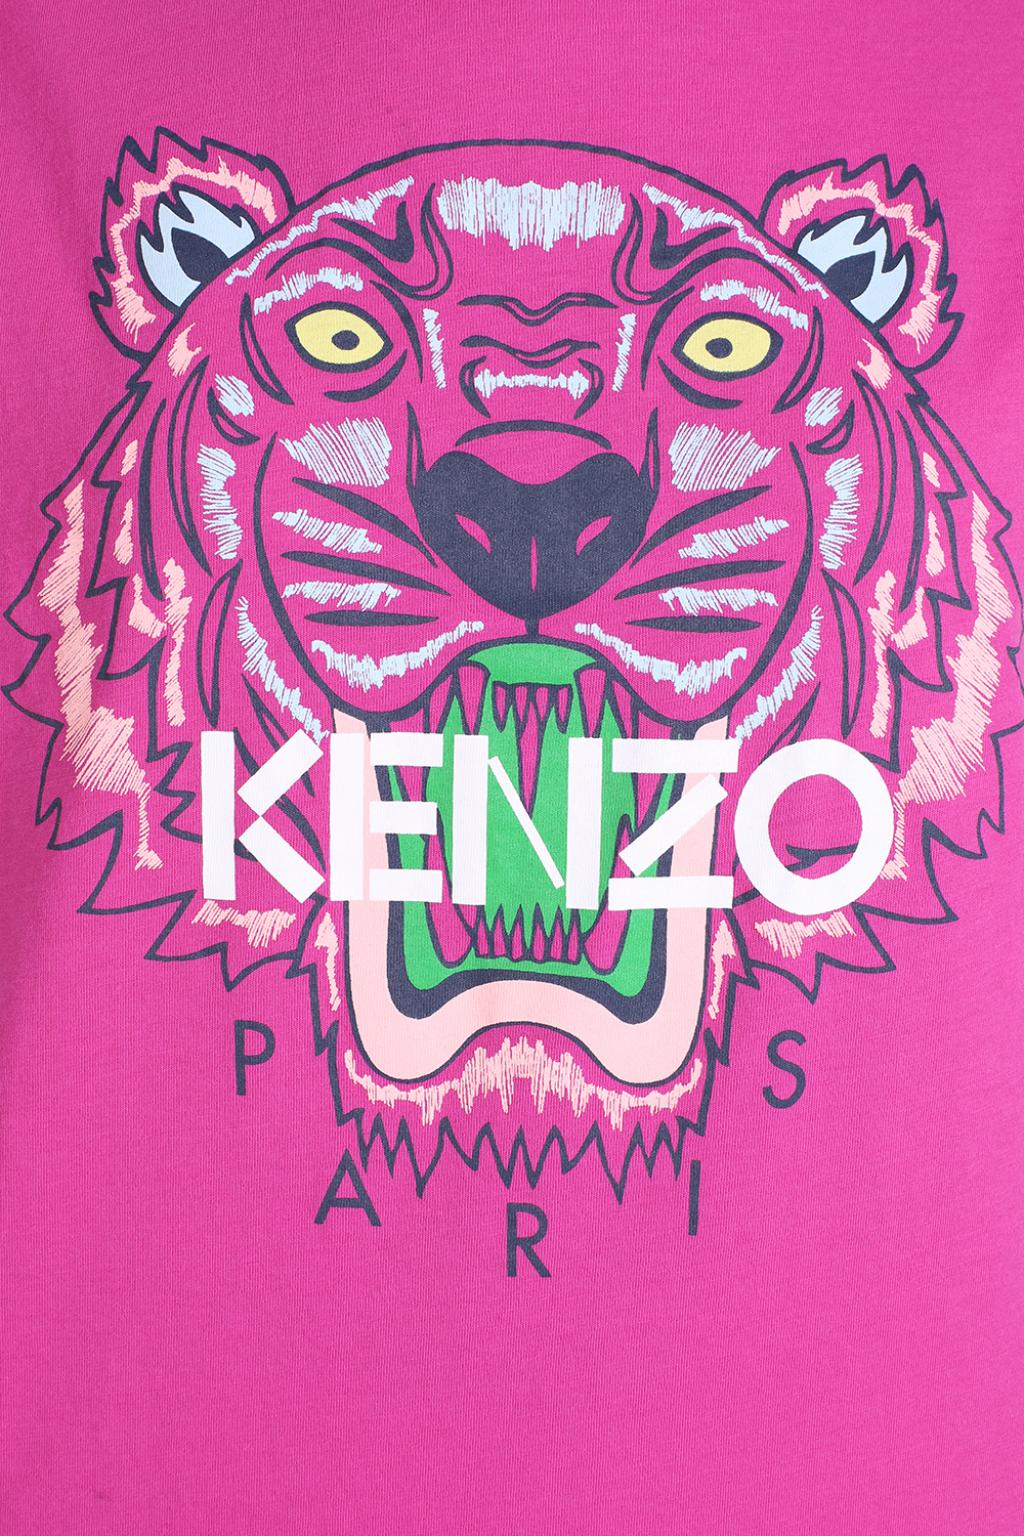 12 Kenzo ý tưởng  ý tưởng hình xăm khủng long nghệ thuật